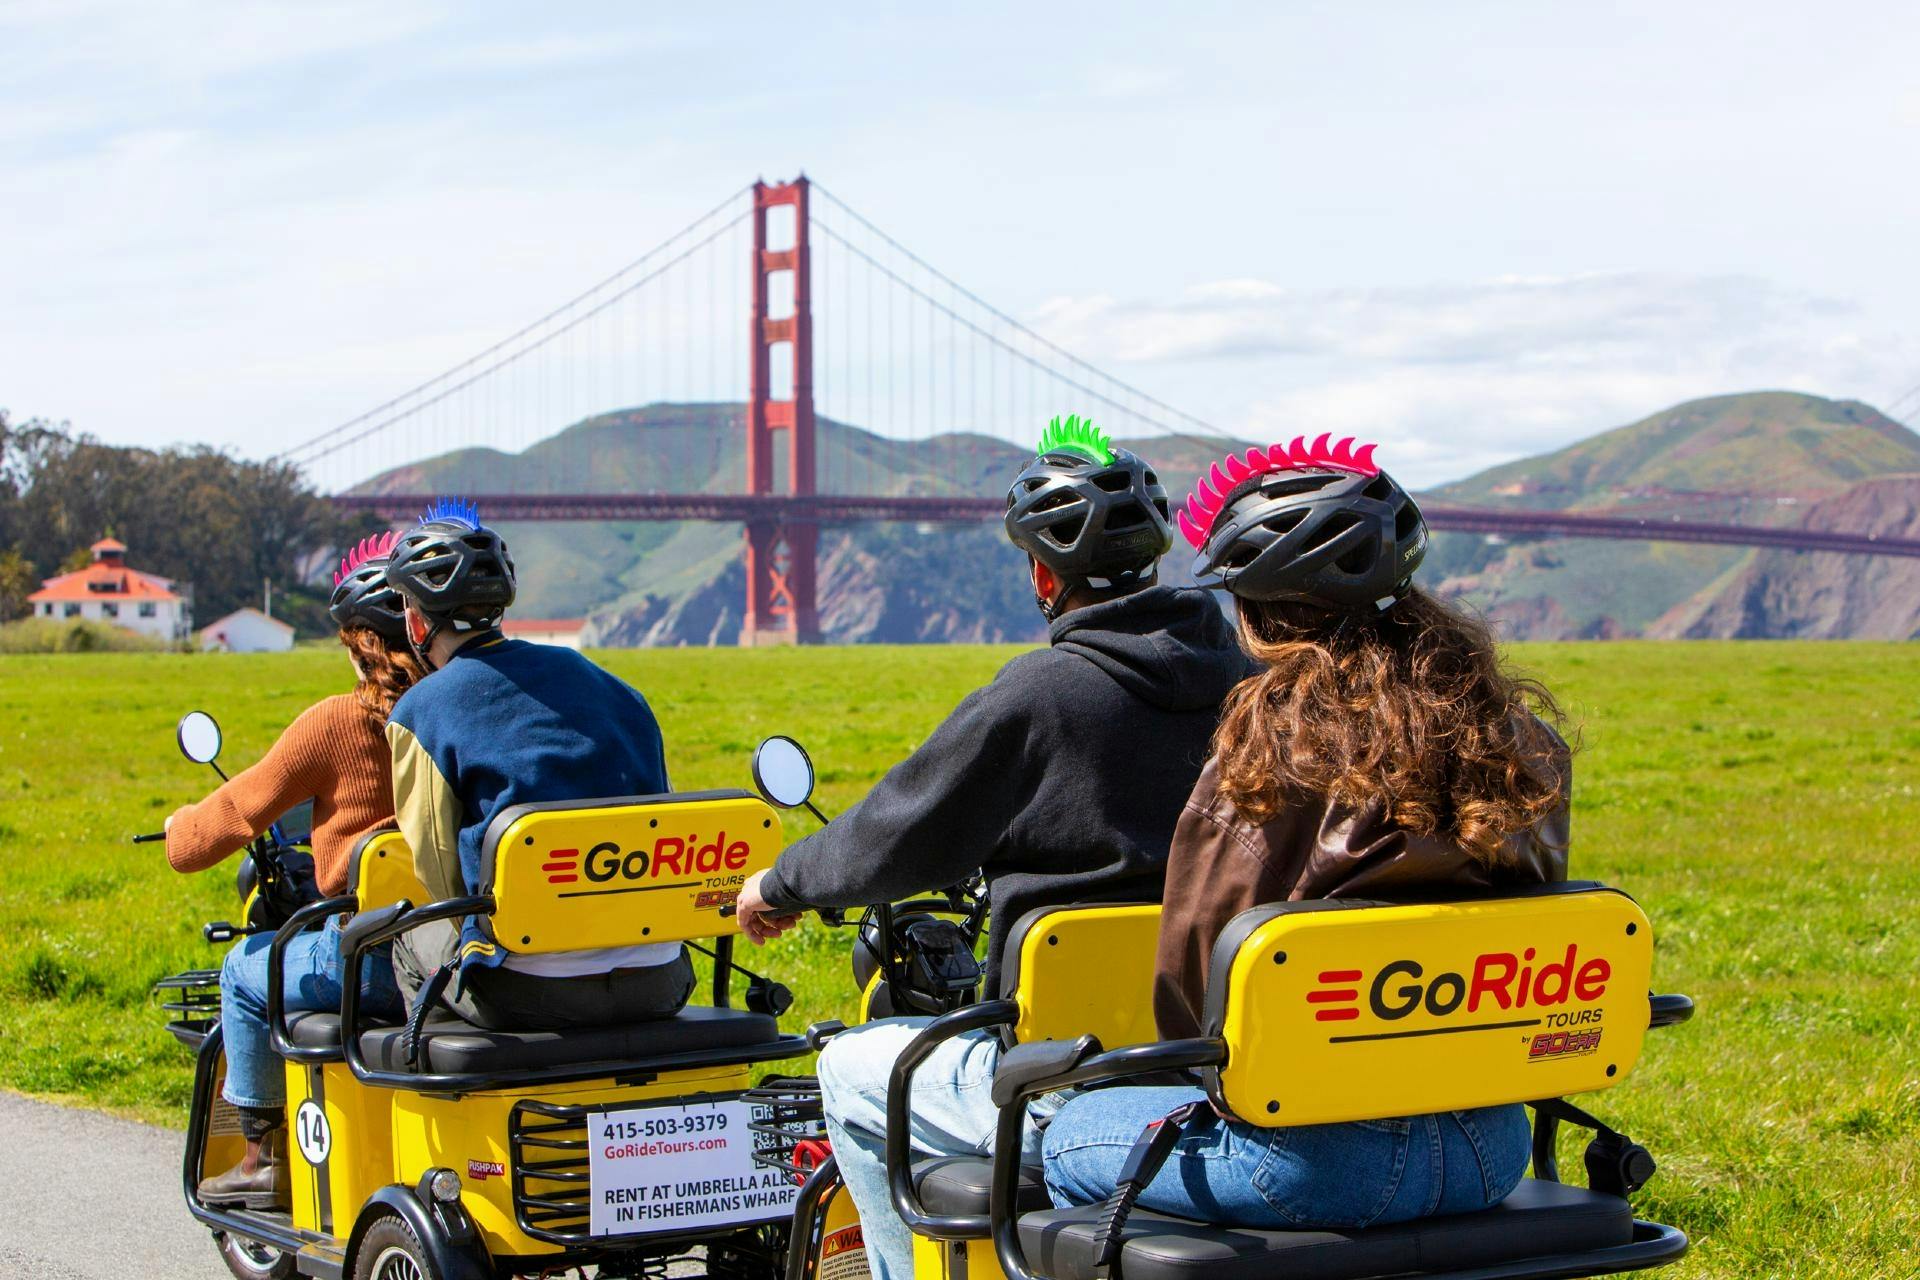 Aluguel de scooter elétrica com passeio narrado por GPS à Ponte Golden Gate